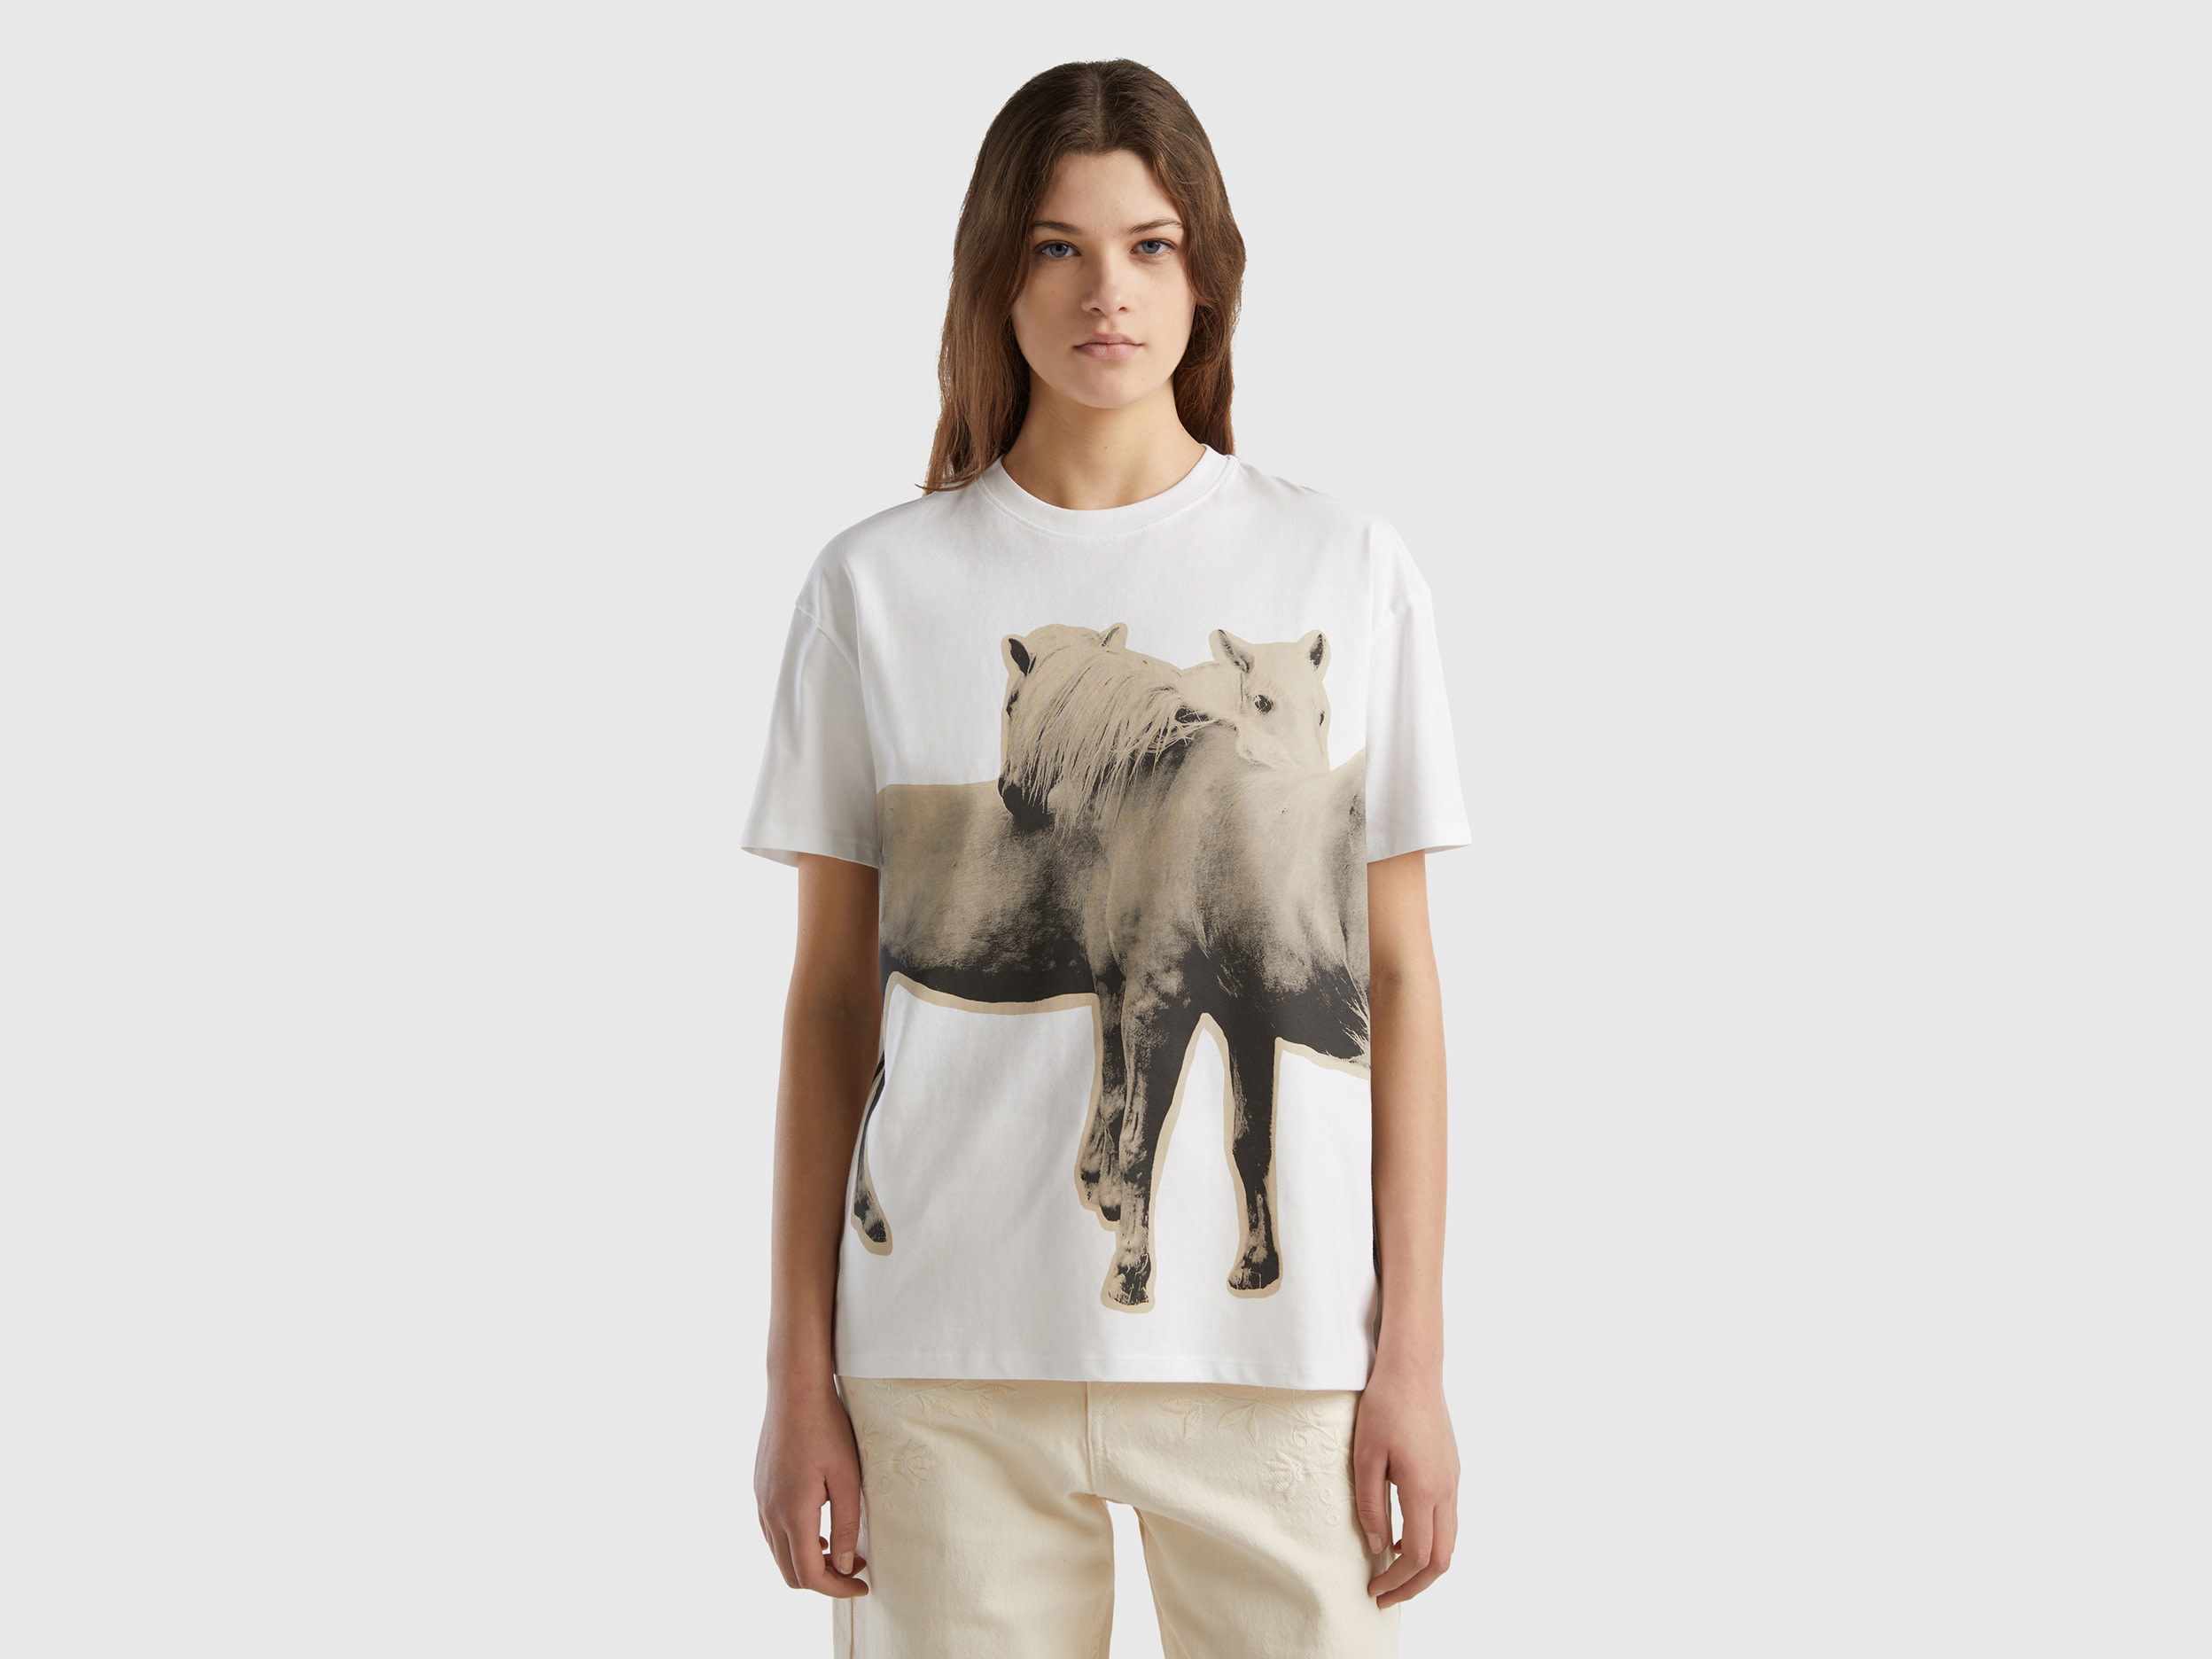 Benetton, Warm T-shirt With Horse Print, size XXS, White, Women